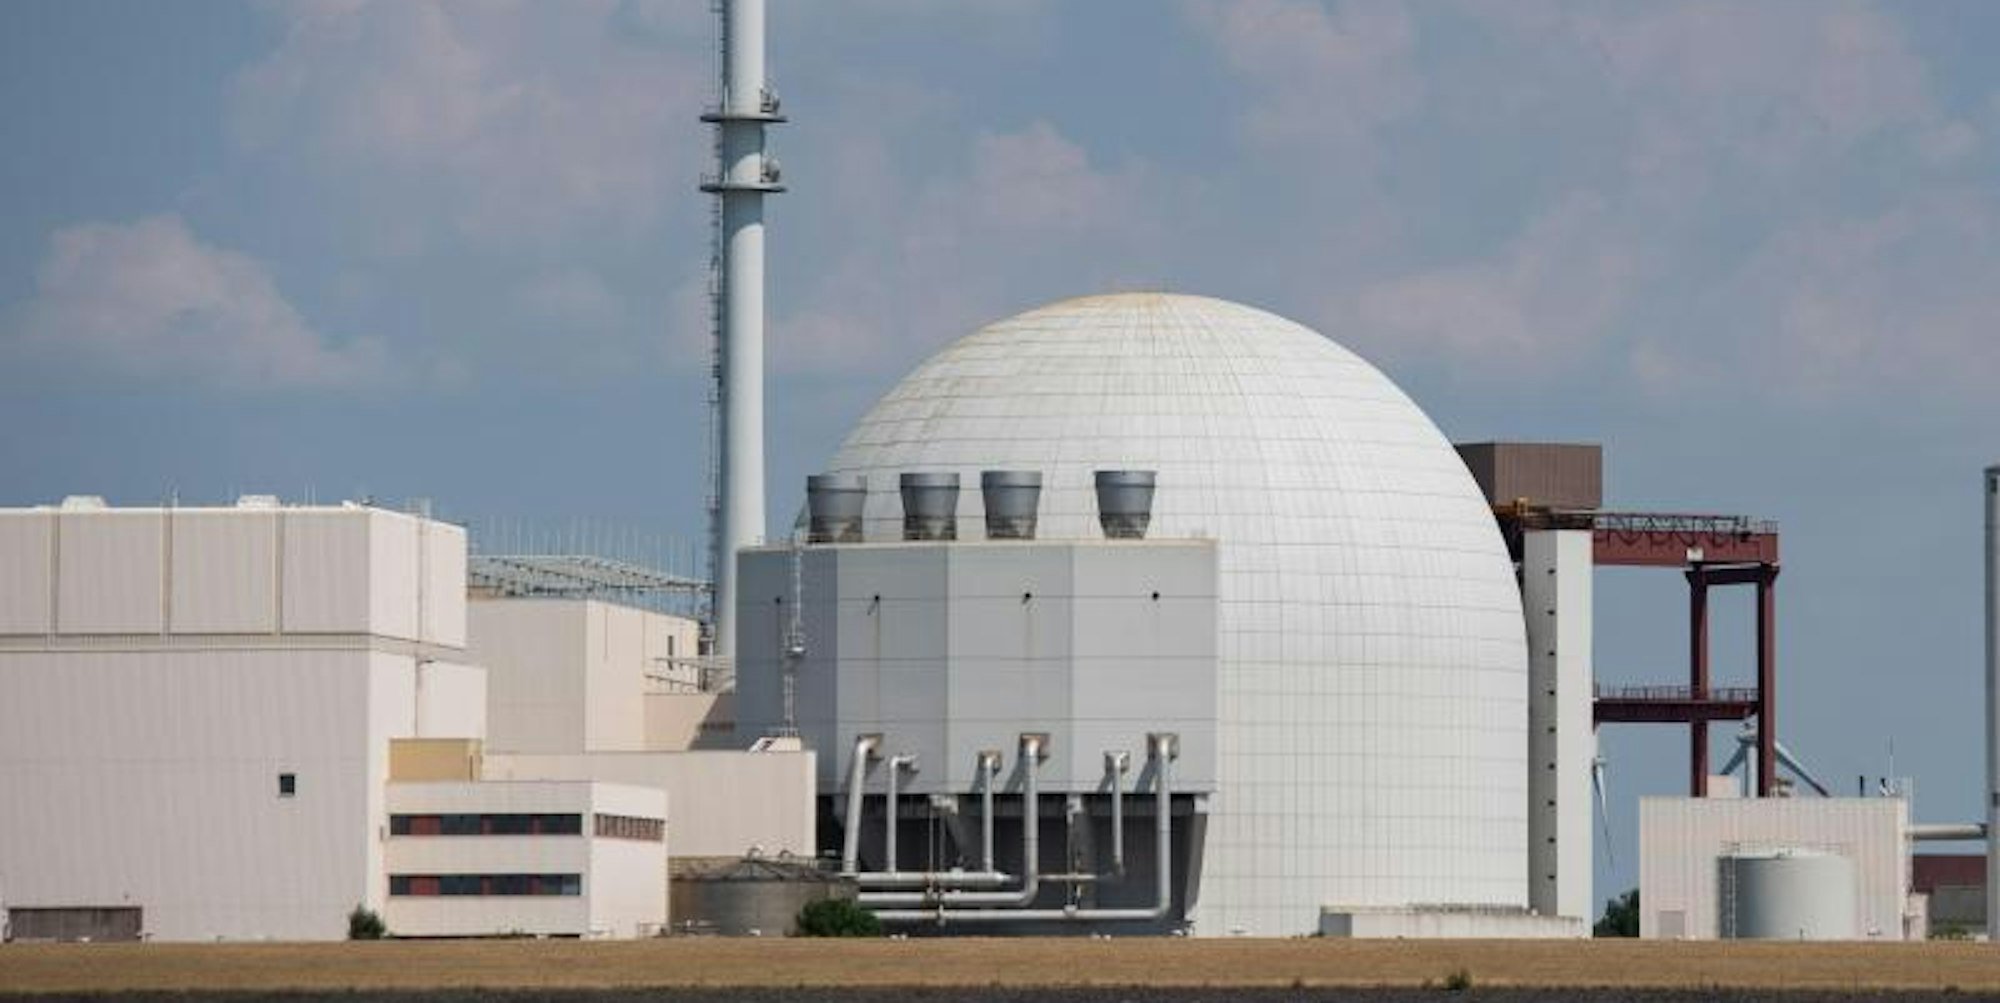 Das Atomkraftwerk Brokdorf ist zu sehen. (Symbolfoto)